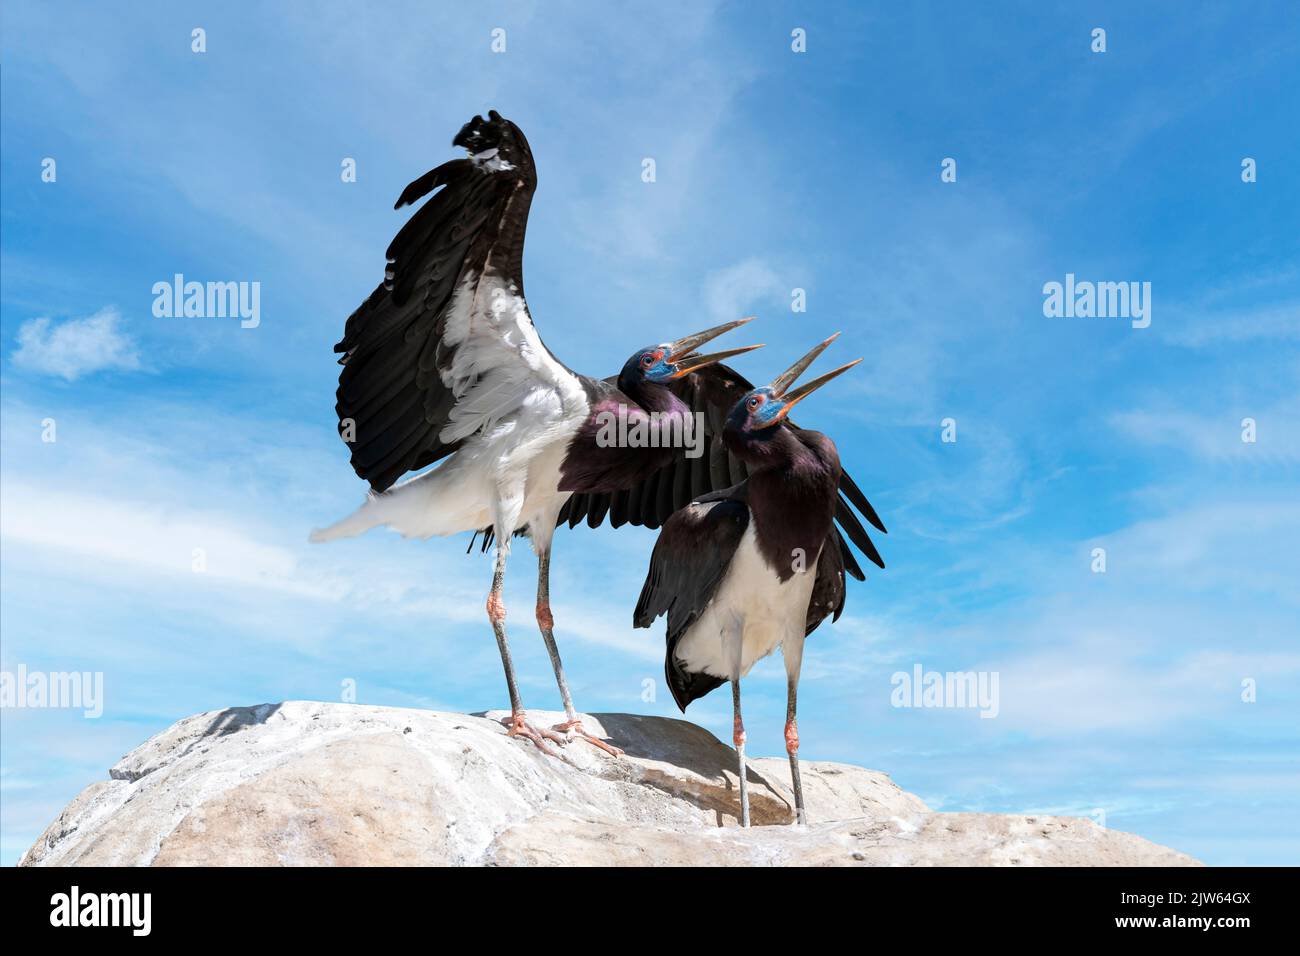 Deux cigognes d'Abdim sur une falaise. (Ciconia abdimii) également connu sous le nom de cigogne à ventre blanc. Cigogne noire avec pattes grises, genoux et pieds rouges, bec gris Banque D'Images